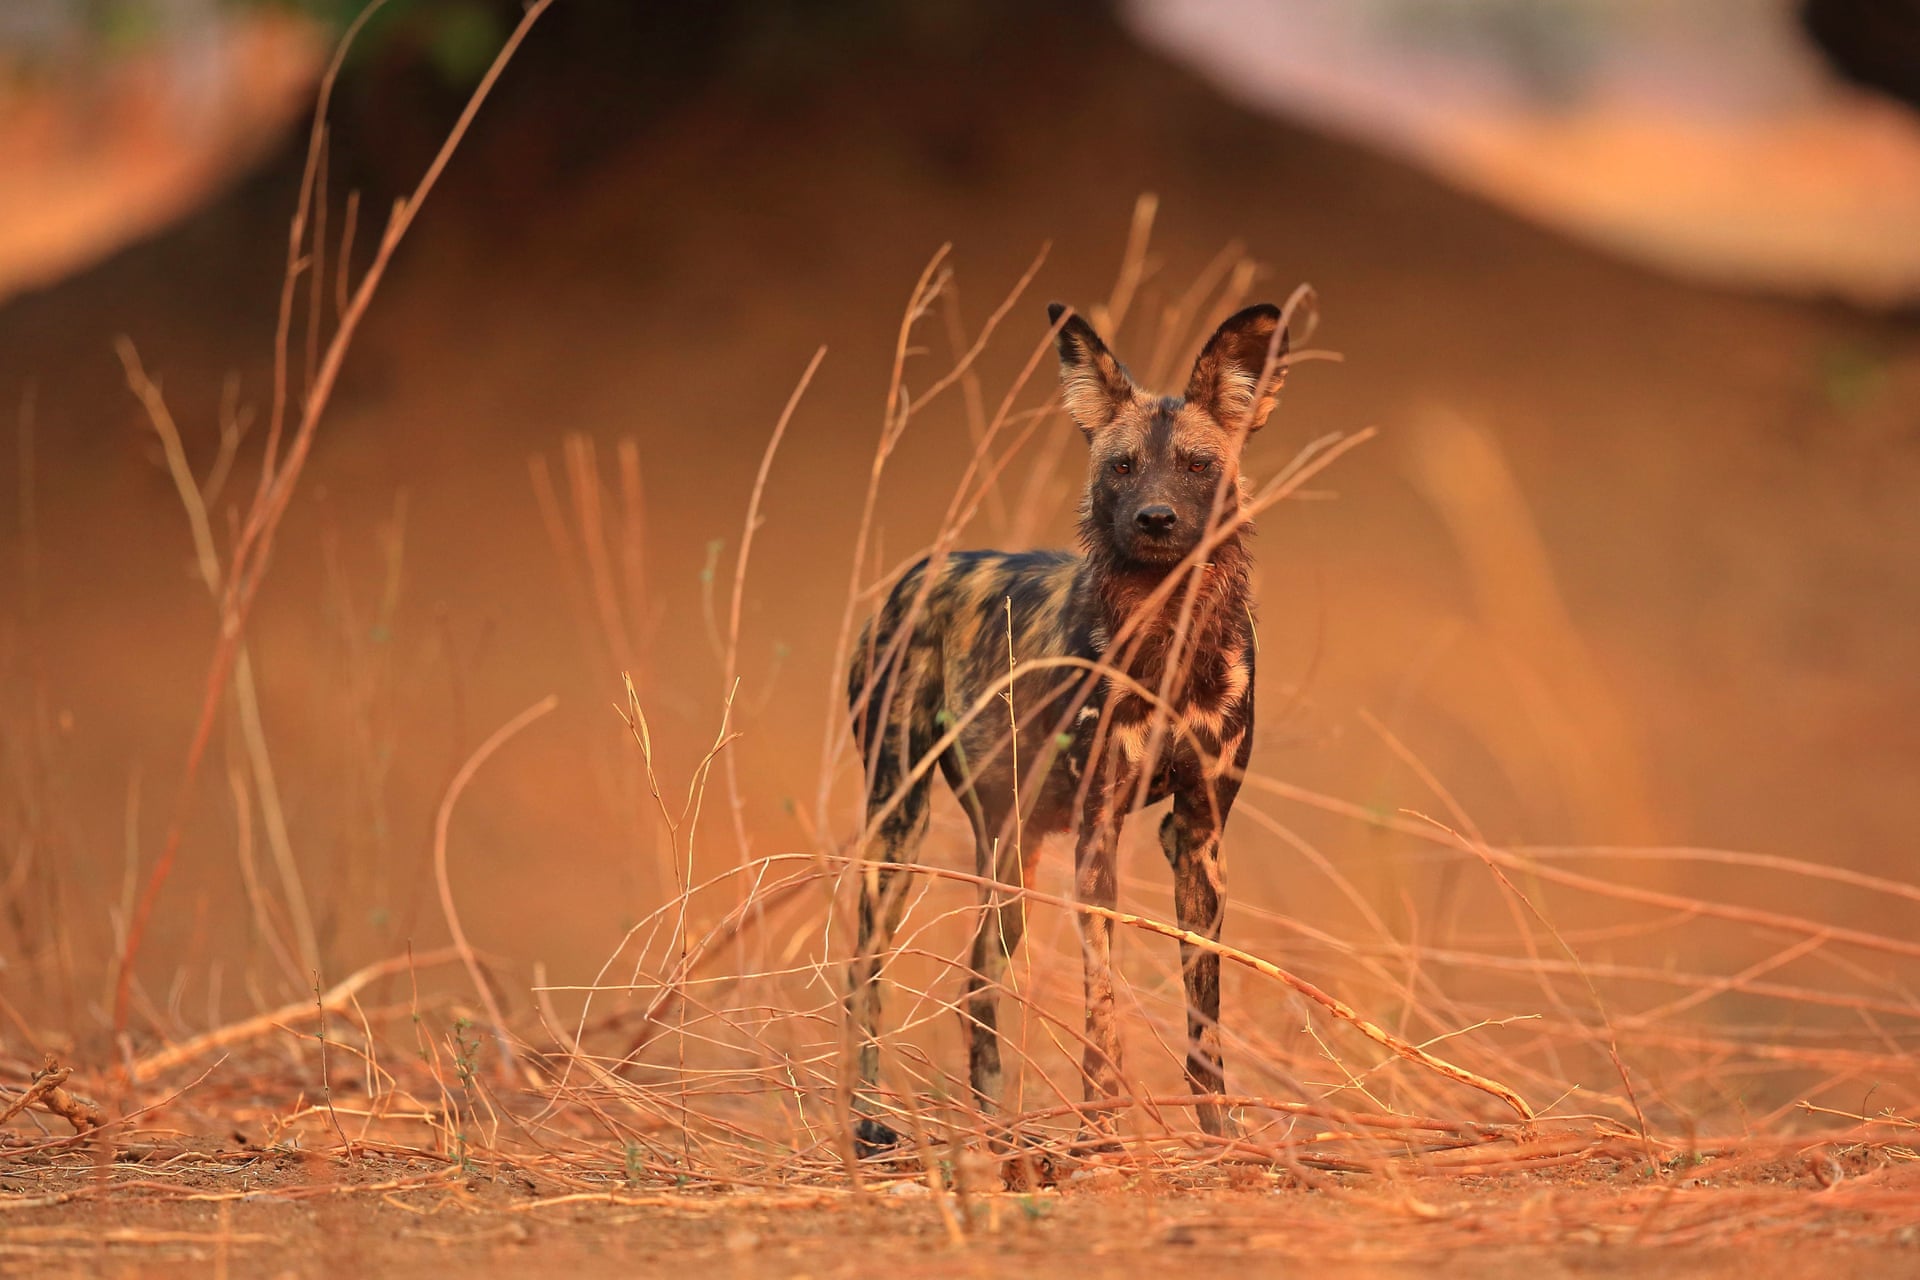 马纳波尔斯】马纳波尔斯国家公园内,一只准备独自狩猎的非洲野犬